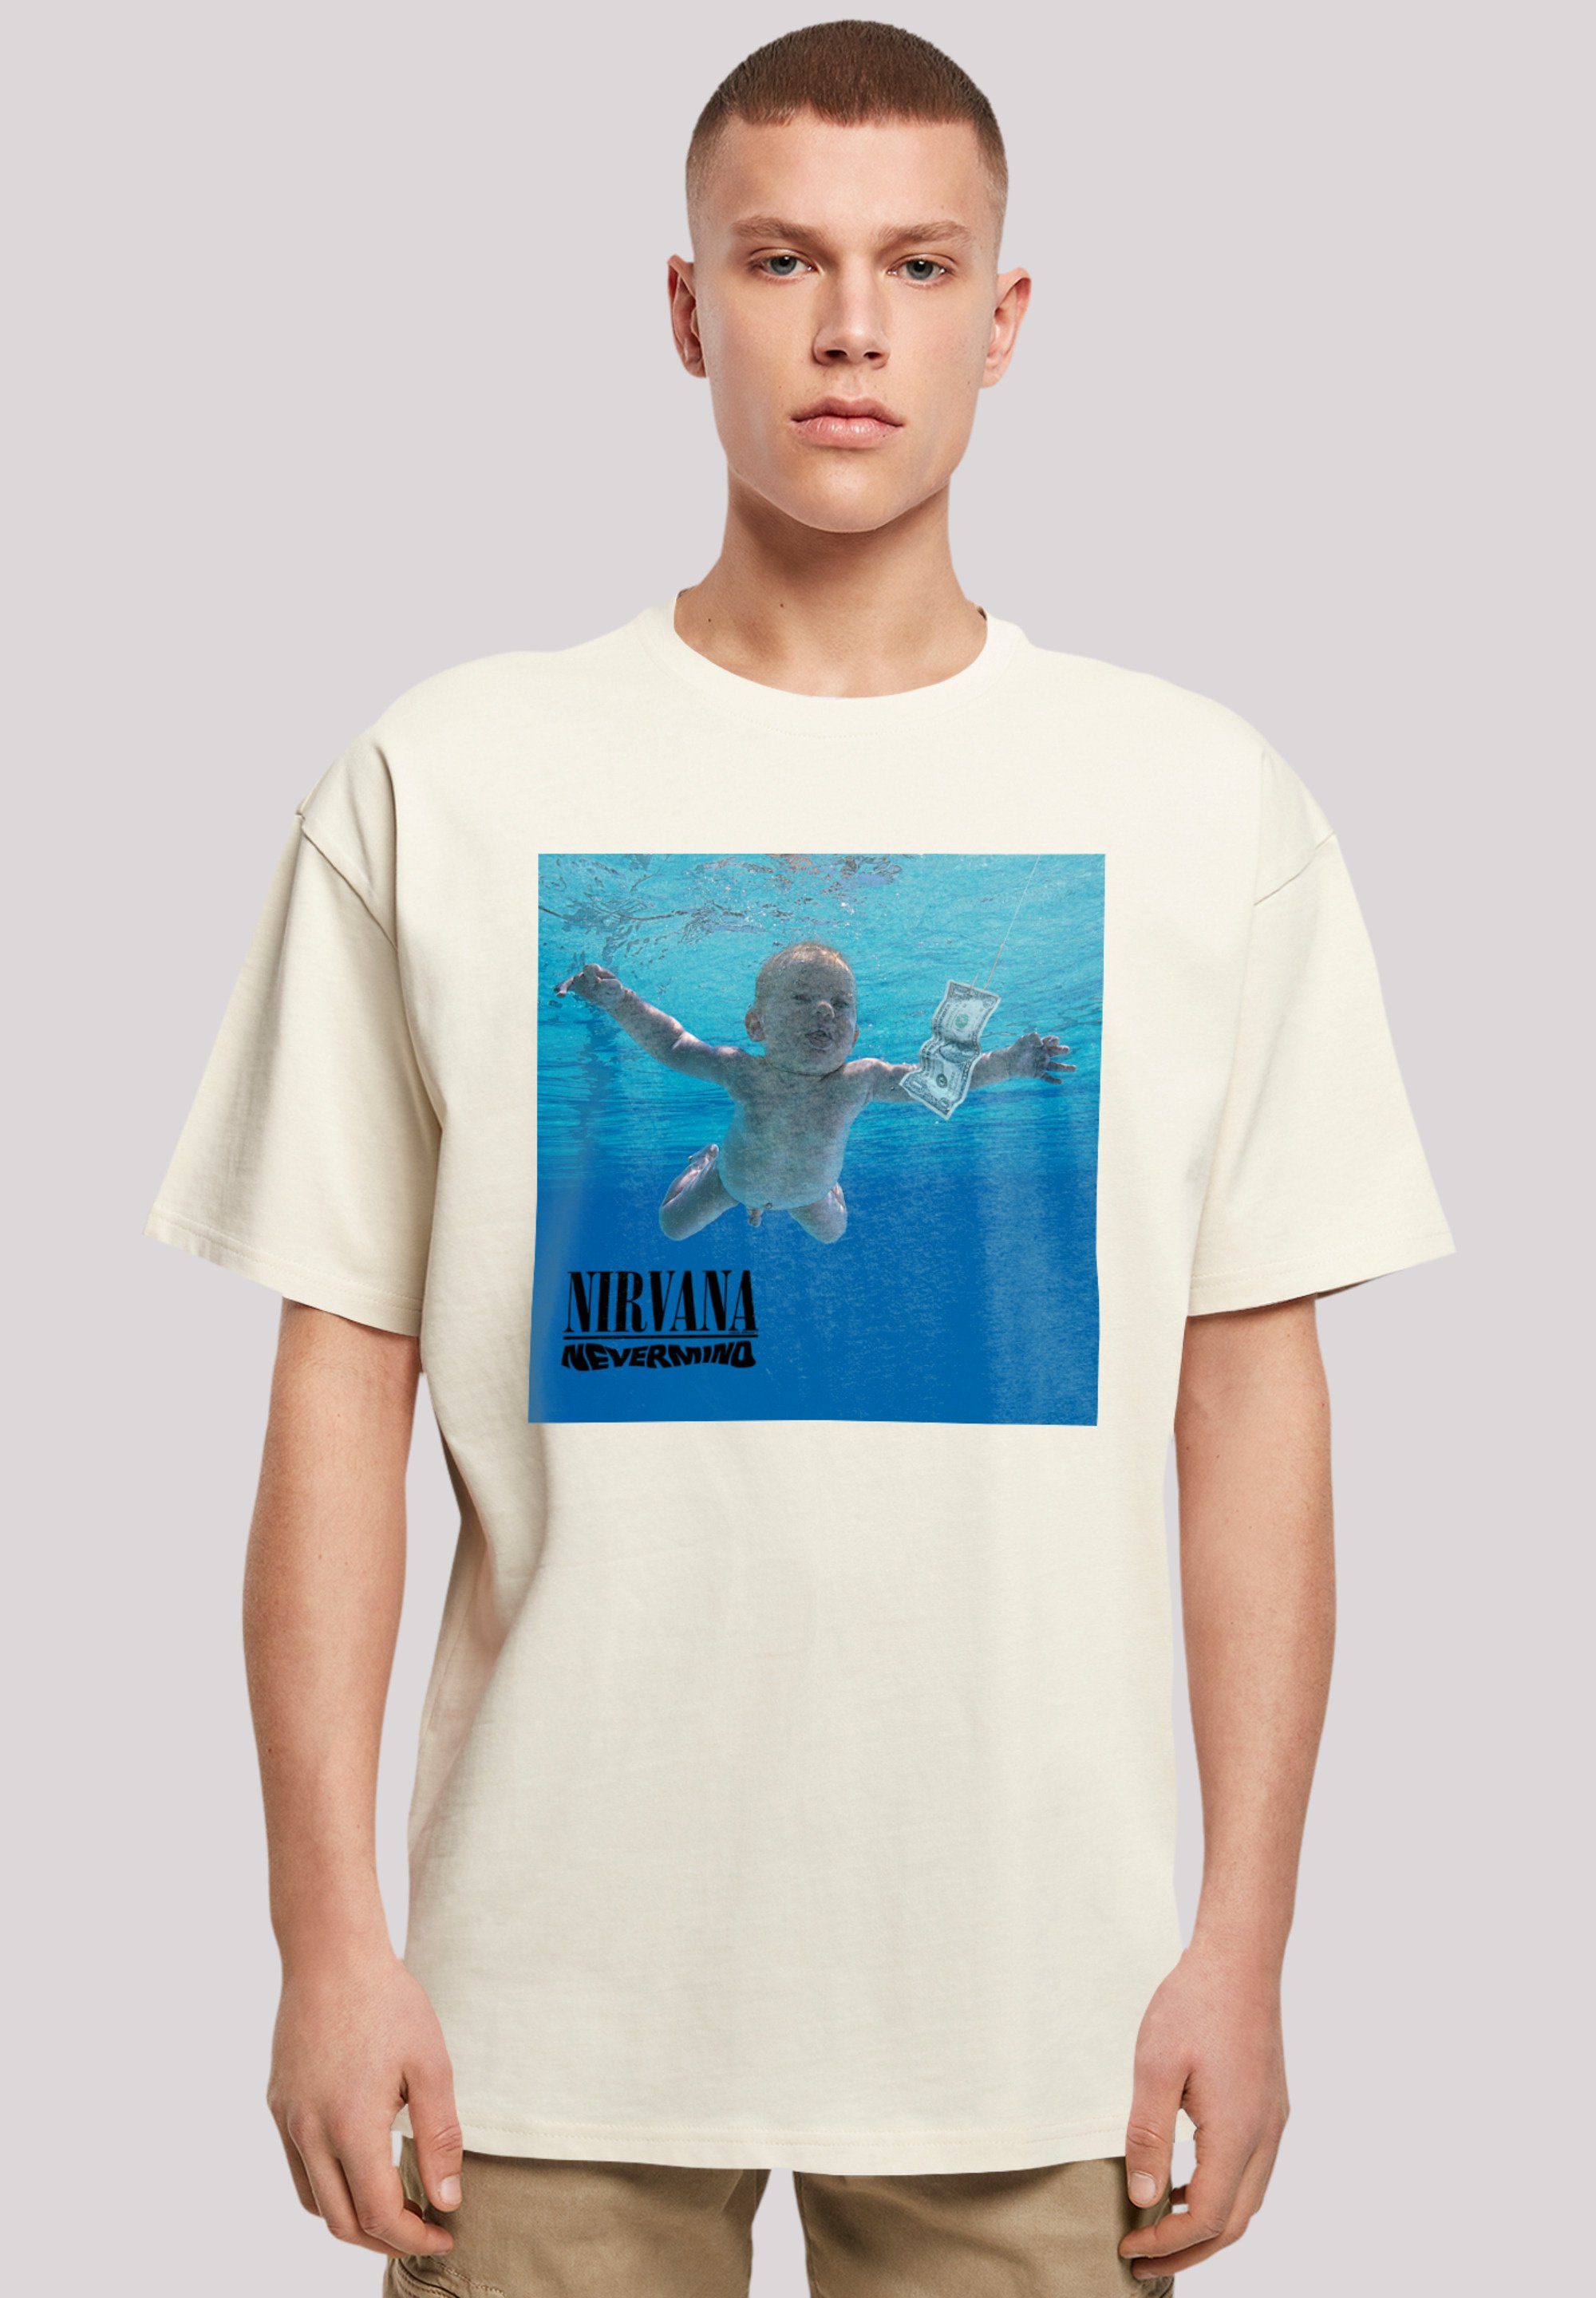 Band Nirvana Passform Weite Schultern Qualität, Album überschnittene Rock und Premium F4NT4STIC T-Shirt Nevermind